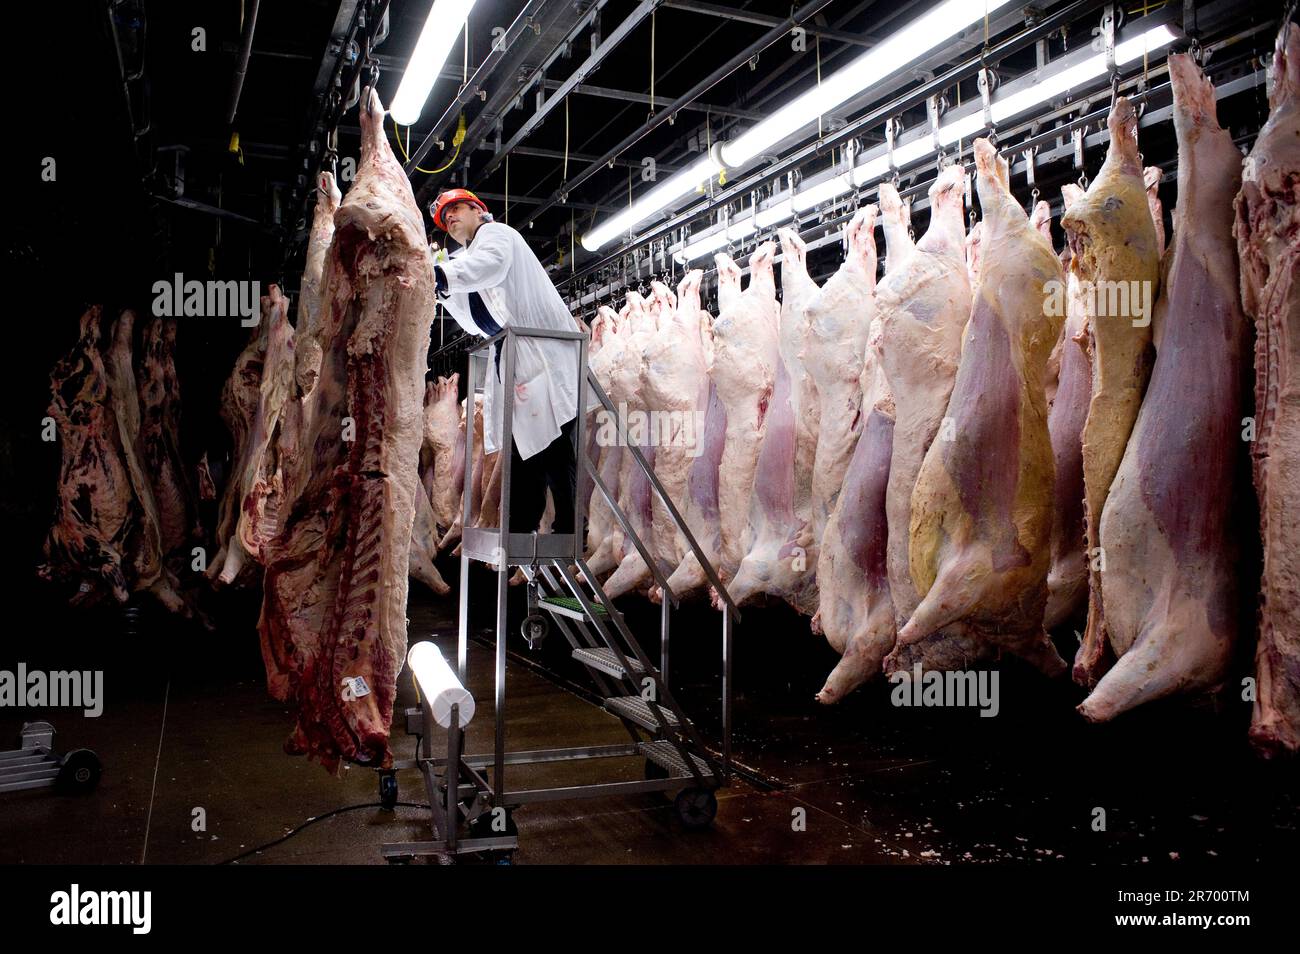 Emballage de la viande : un inspecteur examine les côtés de bœuf frais pour détecter d'éventuels contaminants ou problèmes de santé avant que la viande ne soit refroidie pendant 42 heures Banque D'Images